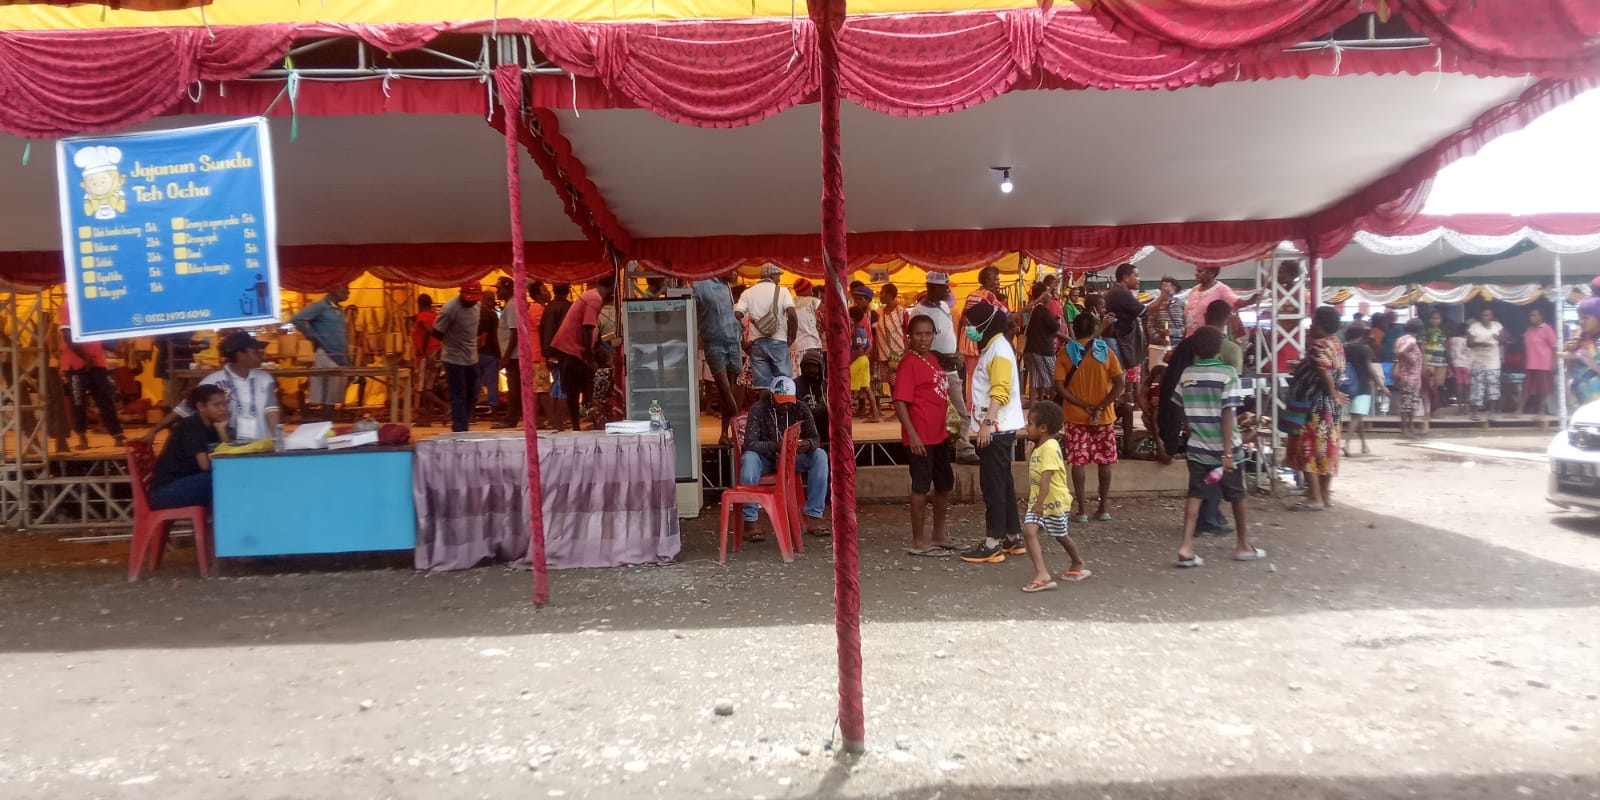 Ket, Foto: Mama-mama Kelompok UMKM Mengamuk di dalam tenda setelah seremoni penutupan di Pasar Lama Jl. Yos Sudarso. Kamis, (14/10)